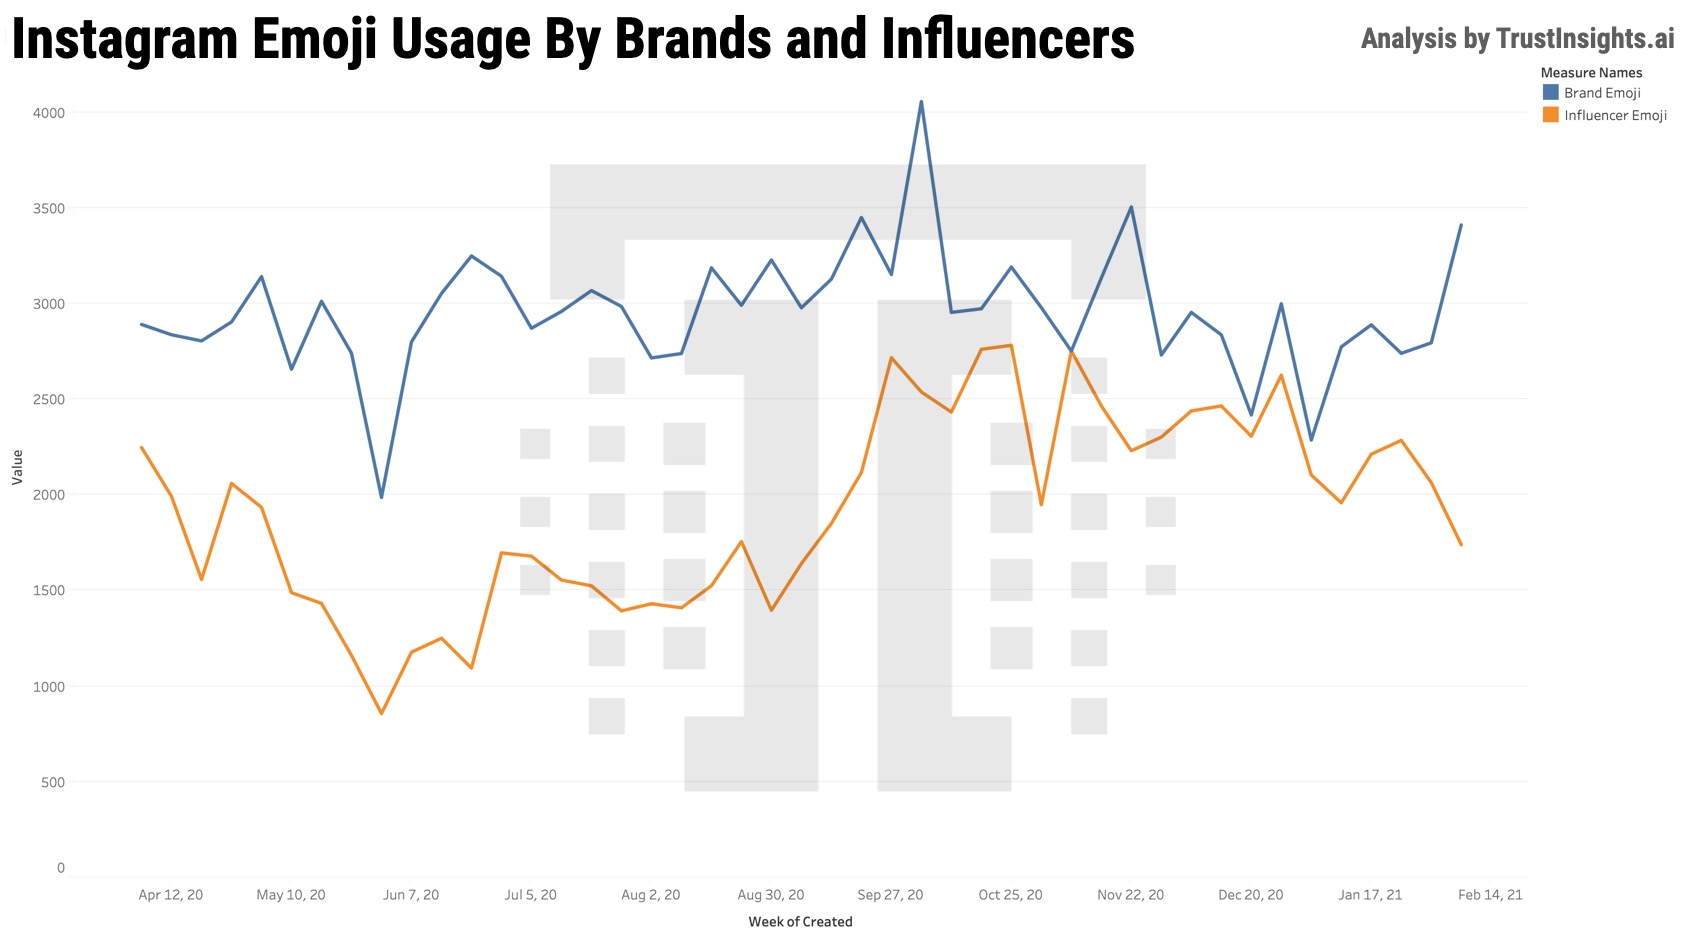 Brand and influence emoji usage